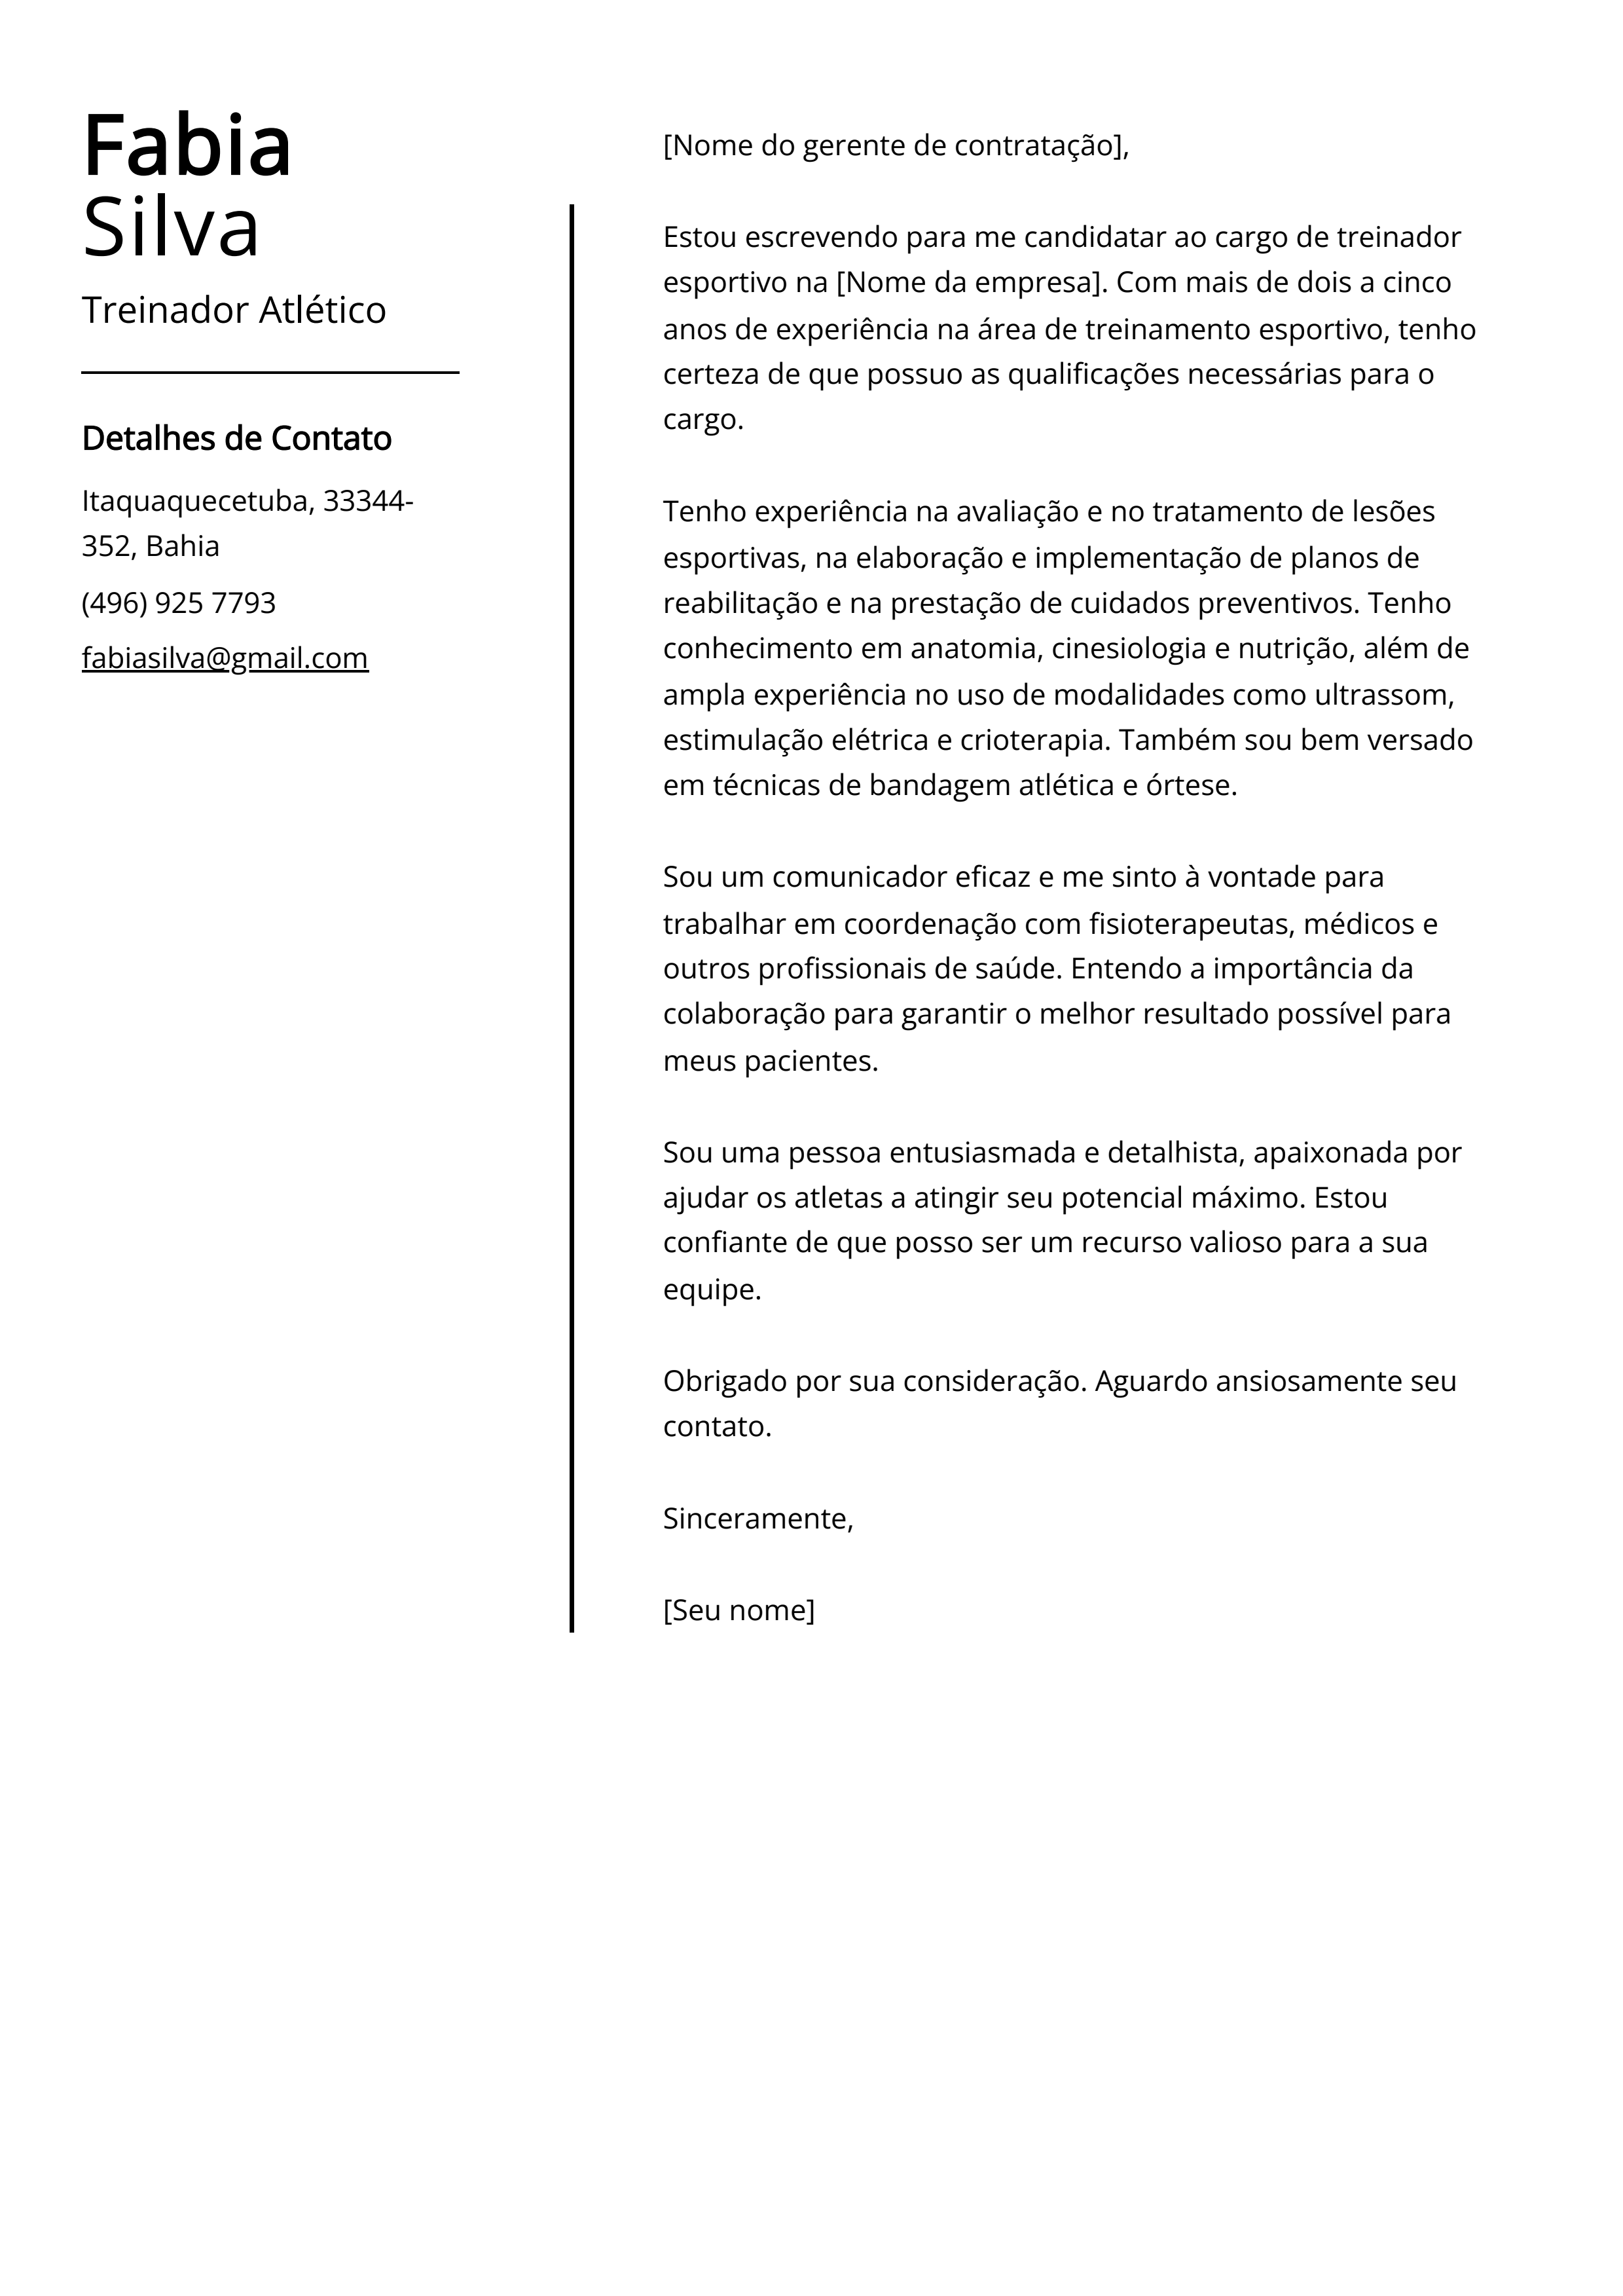 Exemplo de carta de apresentação do Treinador Atlético